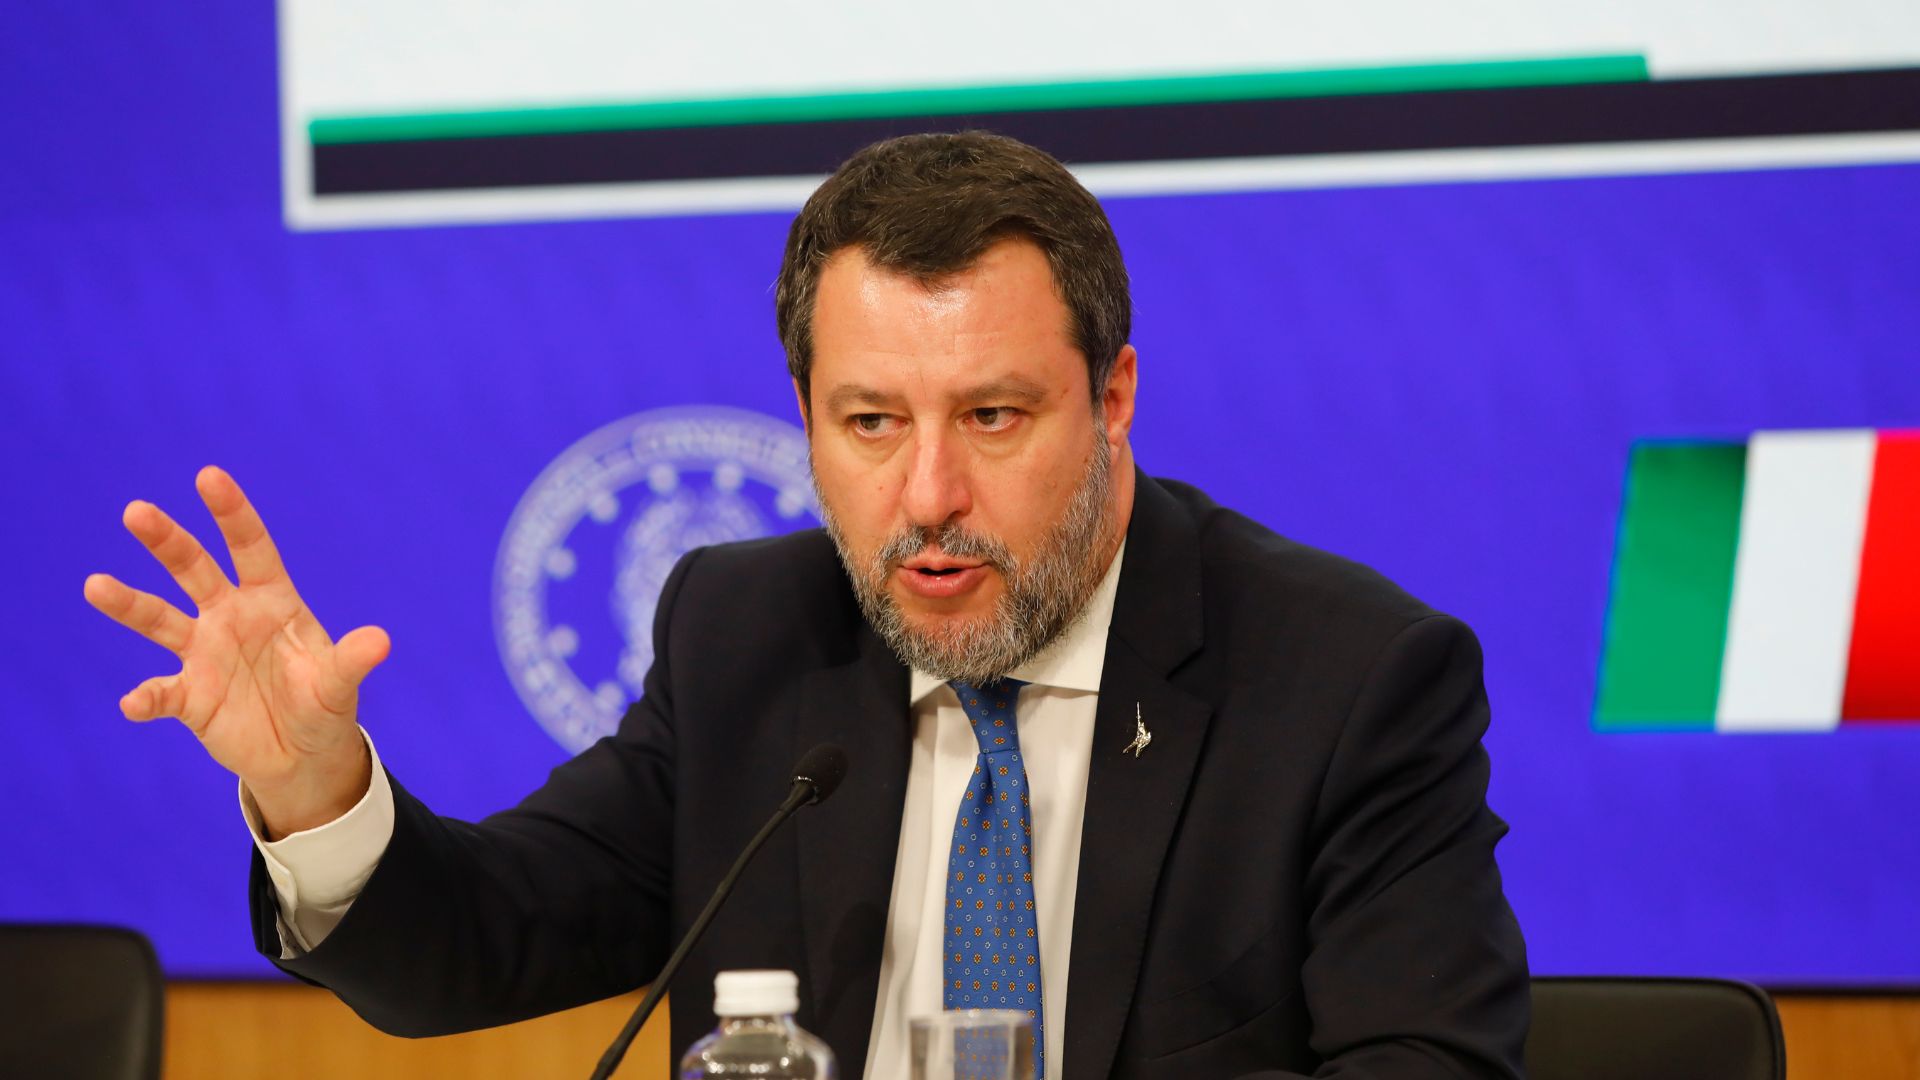 Salvini propone la leva militare obbligatoria: “Ne sono convinto, è una forma di educazione civica”